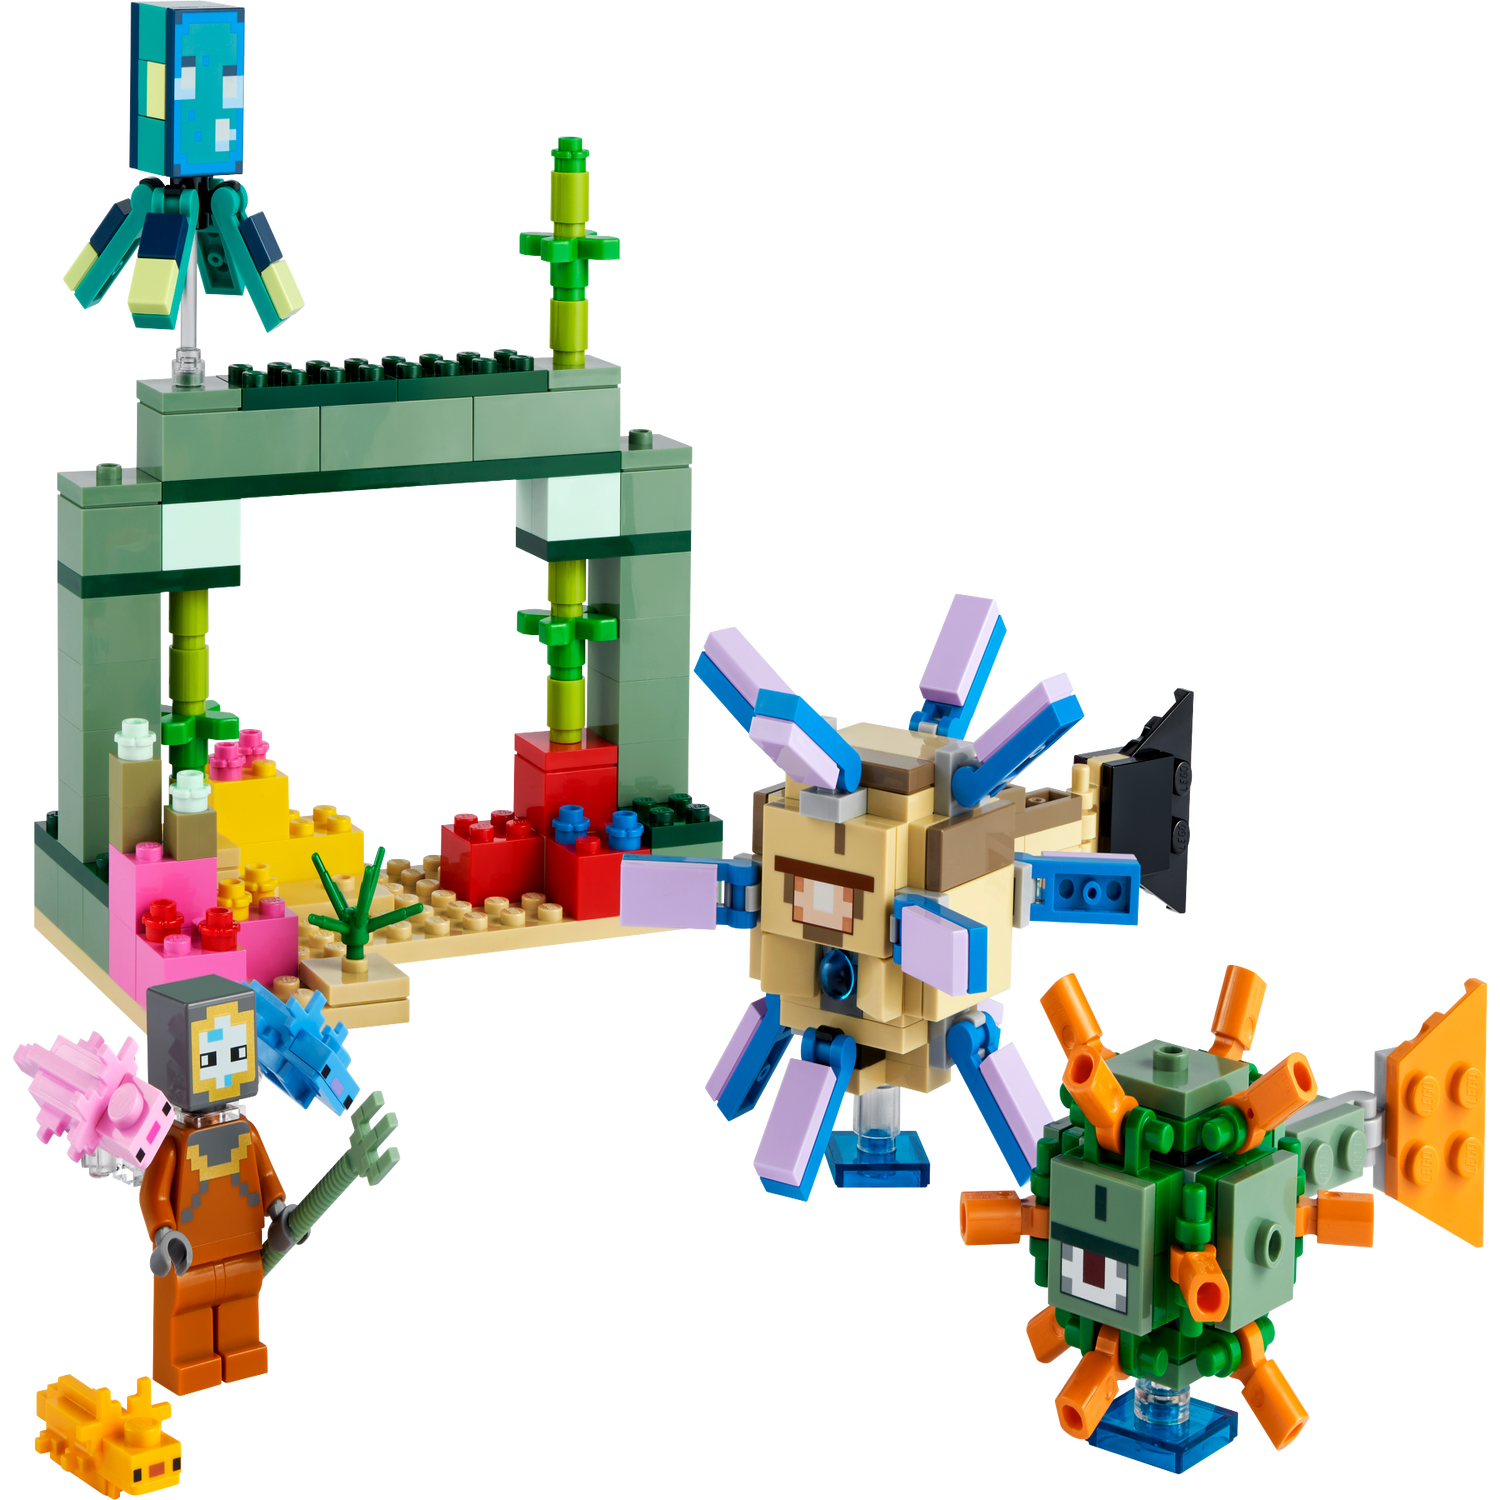 LEGO - 21180 - Minecraft - le Combat des Gardiens